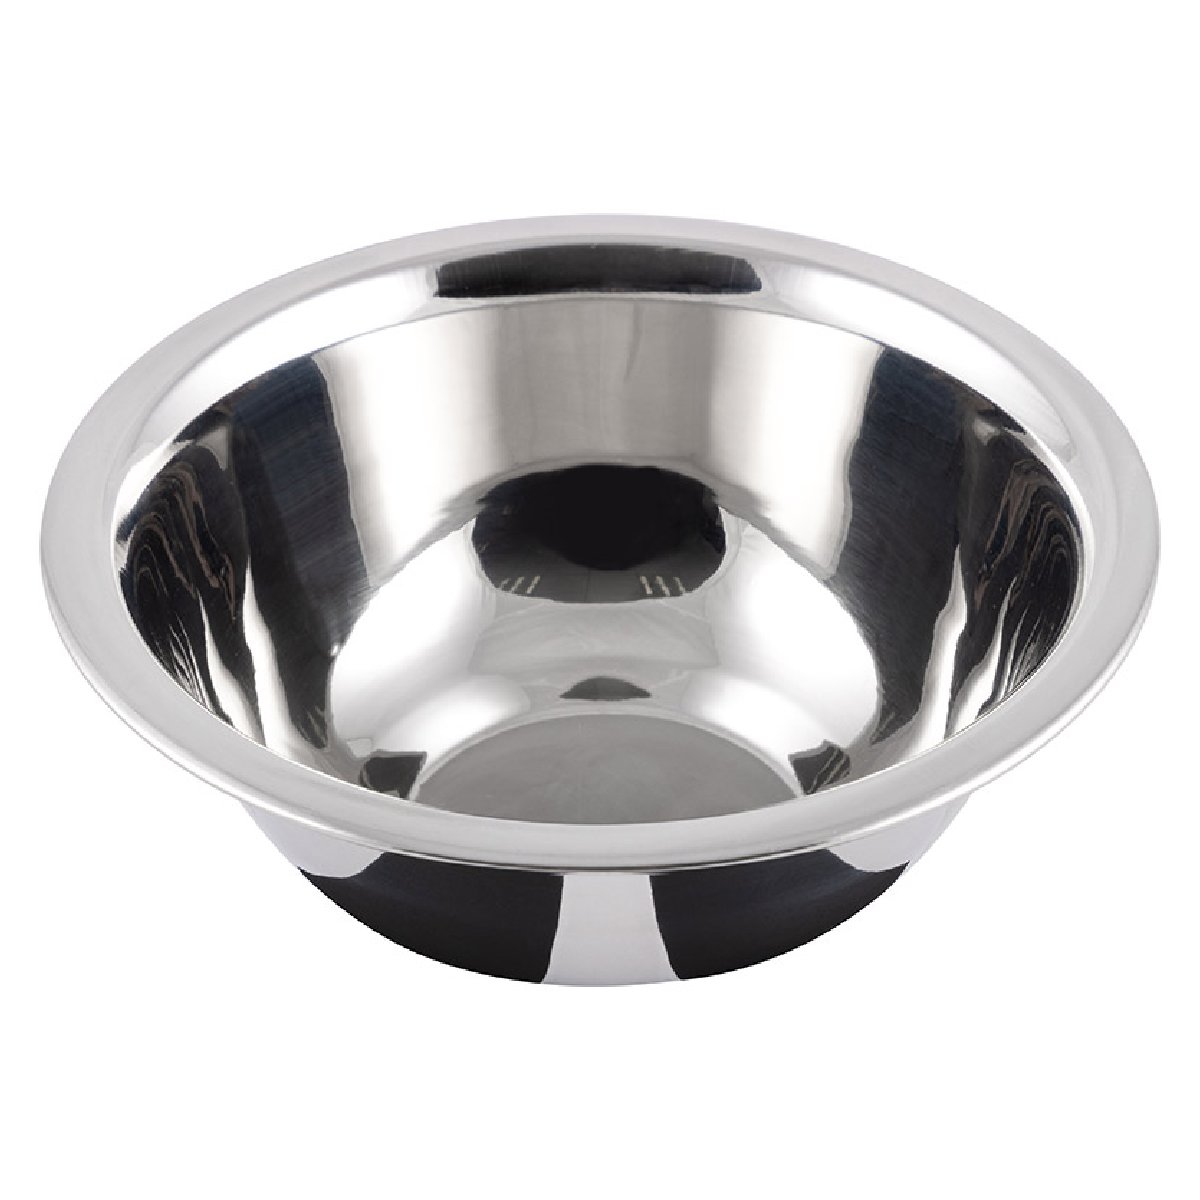 Миска Bowl-Roll-14, объем 450 мл из нержавеющей стали, зеркальная полировка, диа 14 см (103824)Купить